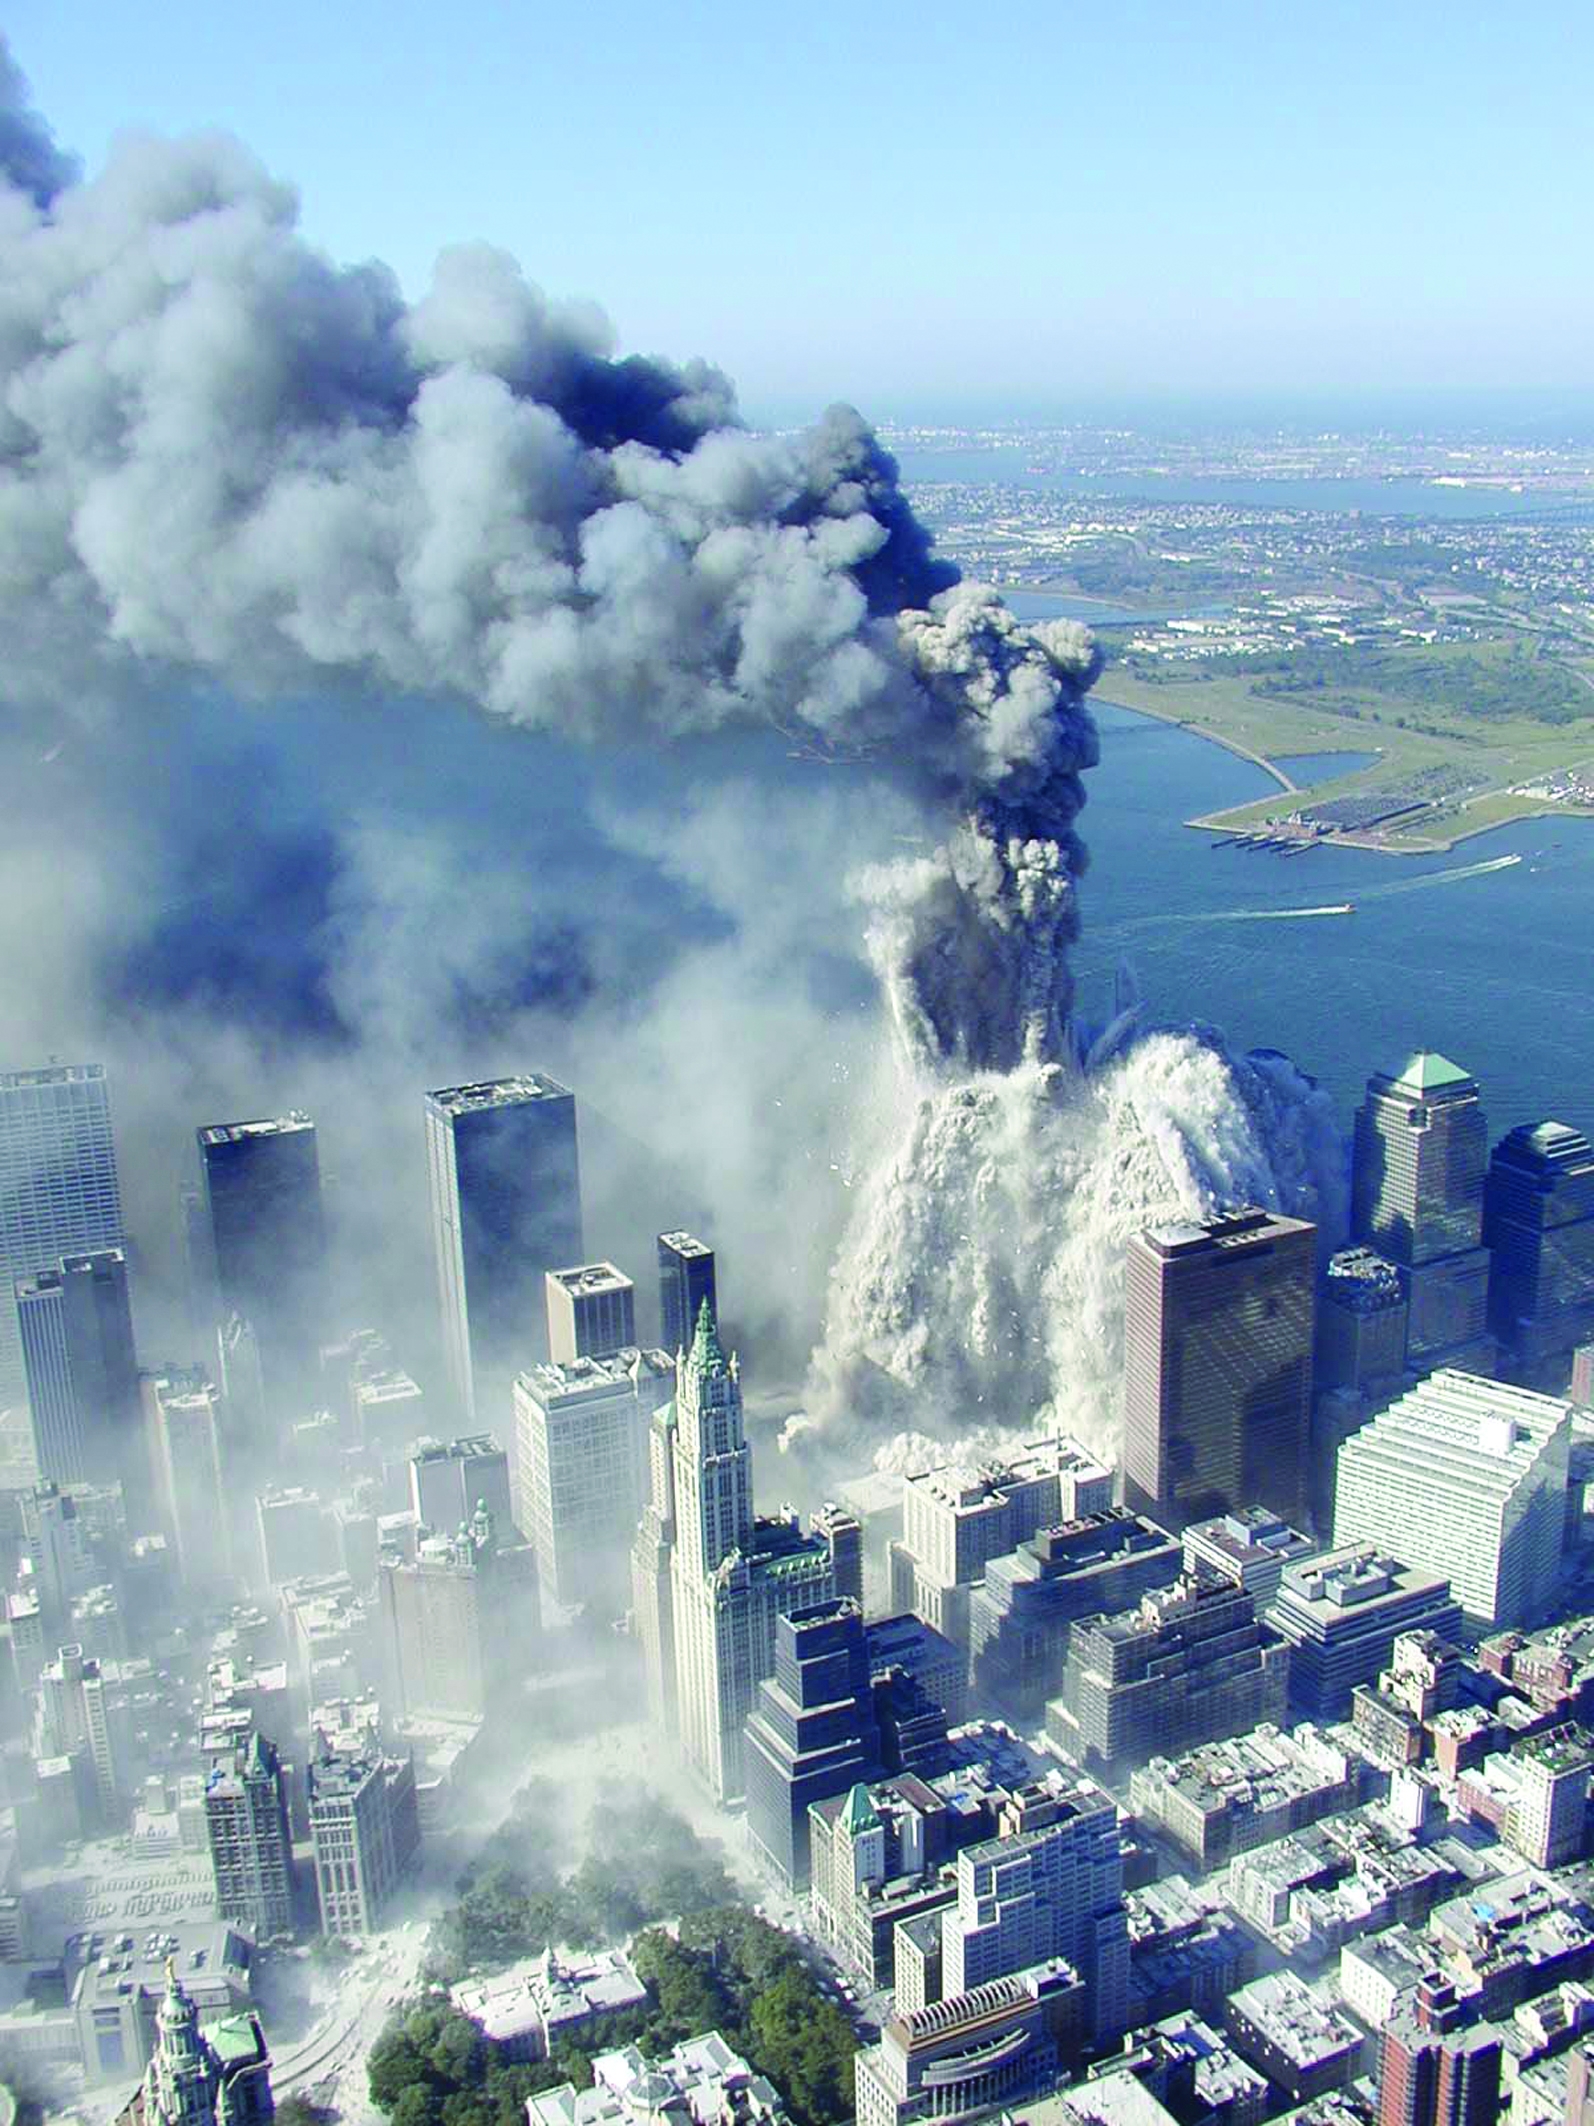 Сколько этажей было в башнях близнецах. Башни ВТЦ 11 сентября 2001. ВТЦ Нью-Йорк 2001. 11.09 Нью Йорк башни Близнецы.